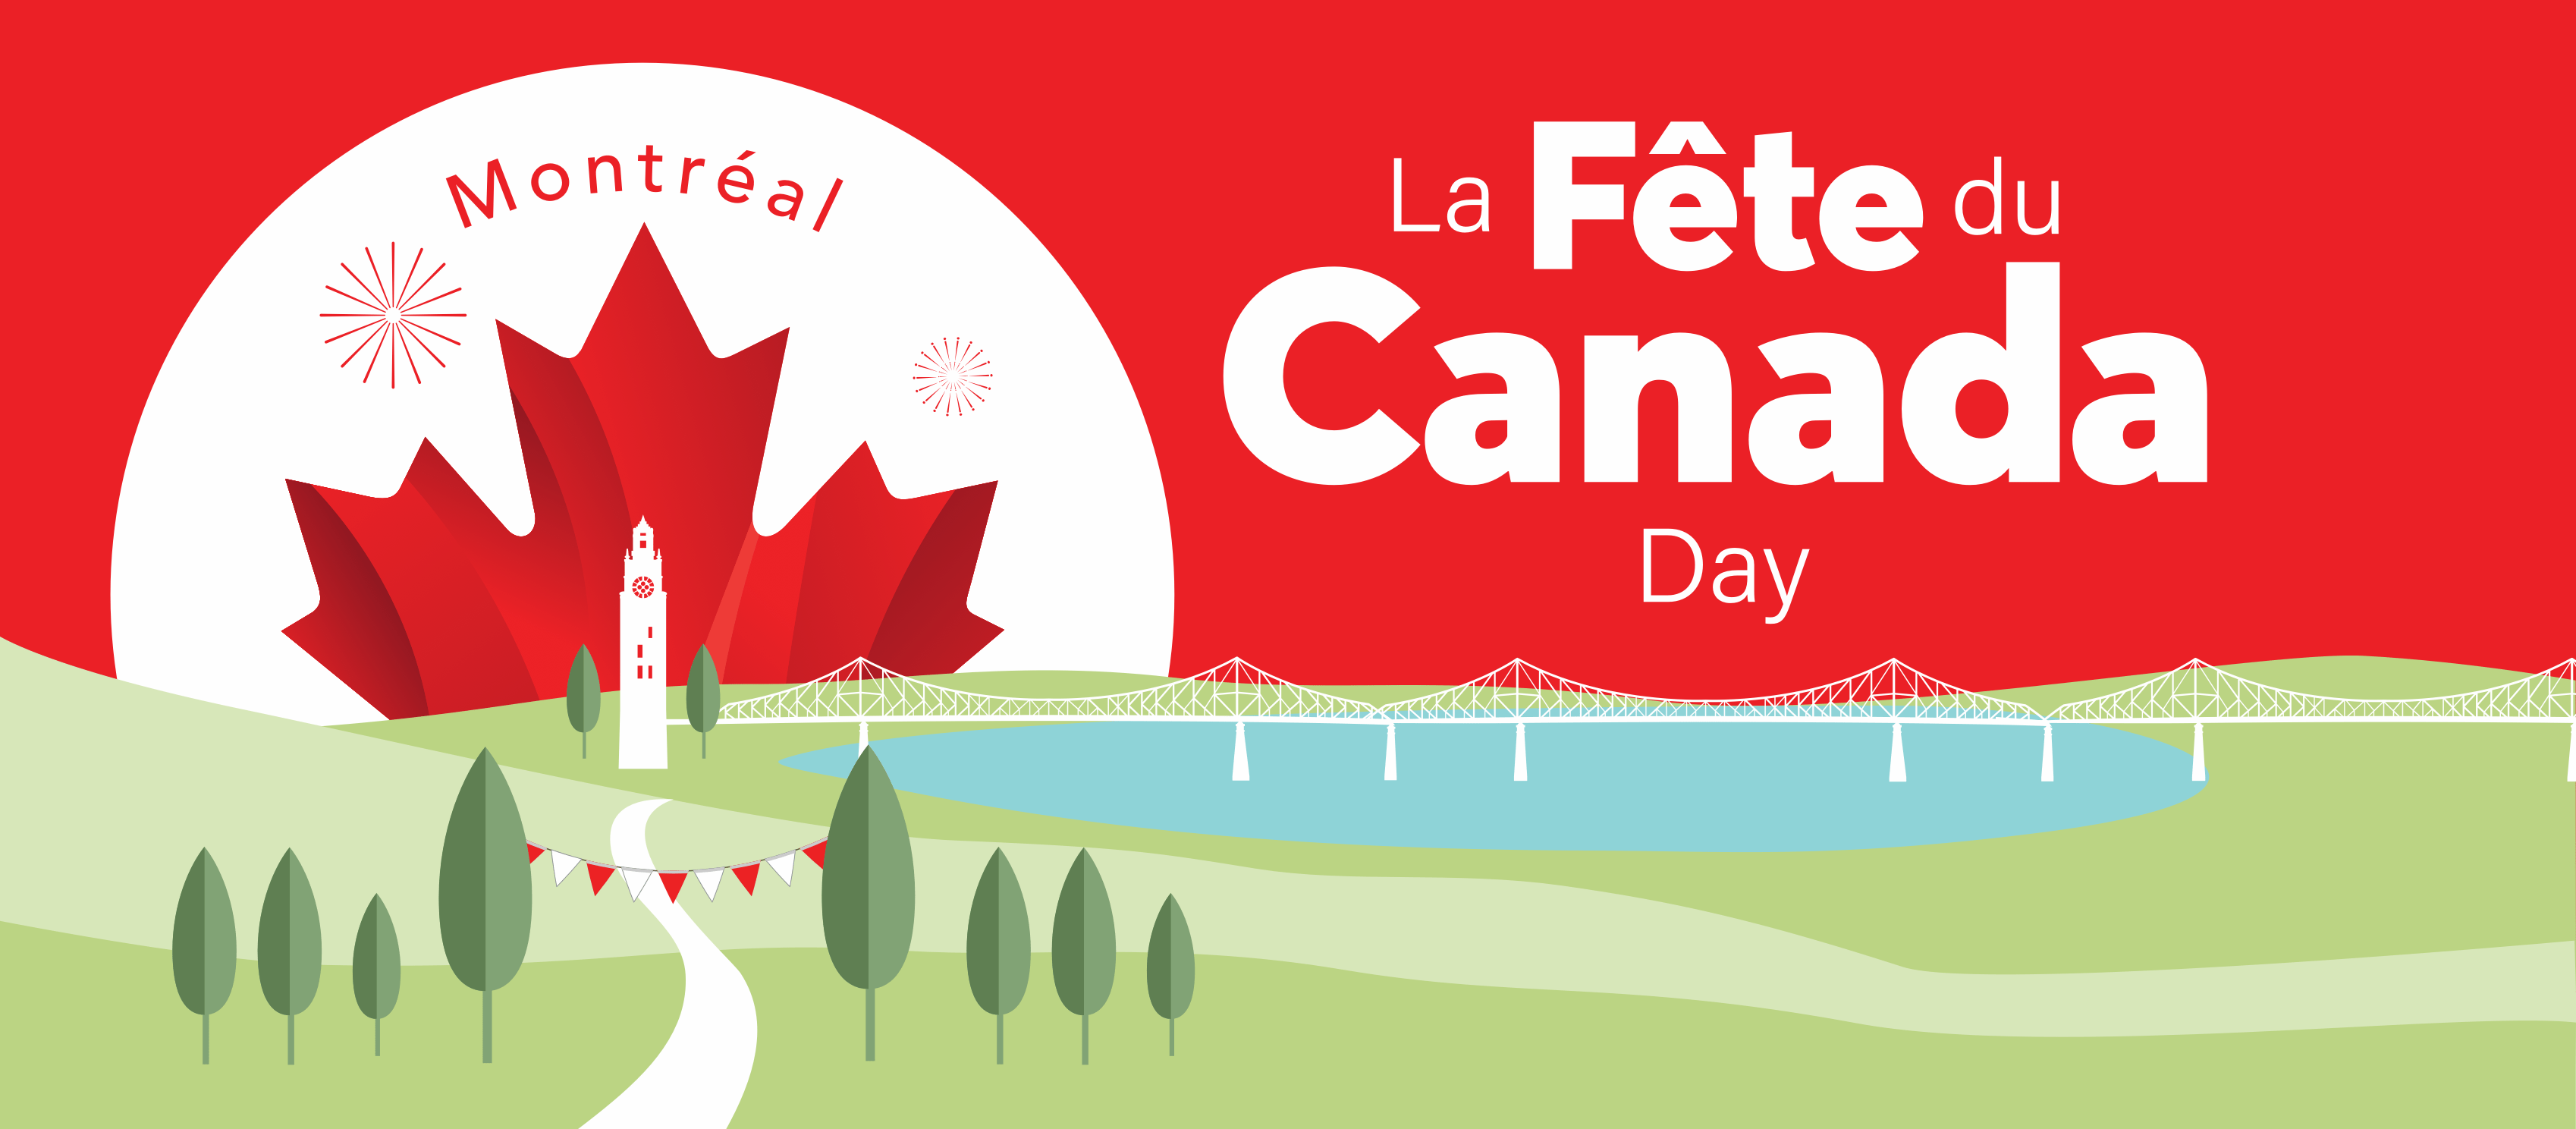 La fête du Canada à Montréal